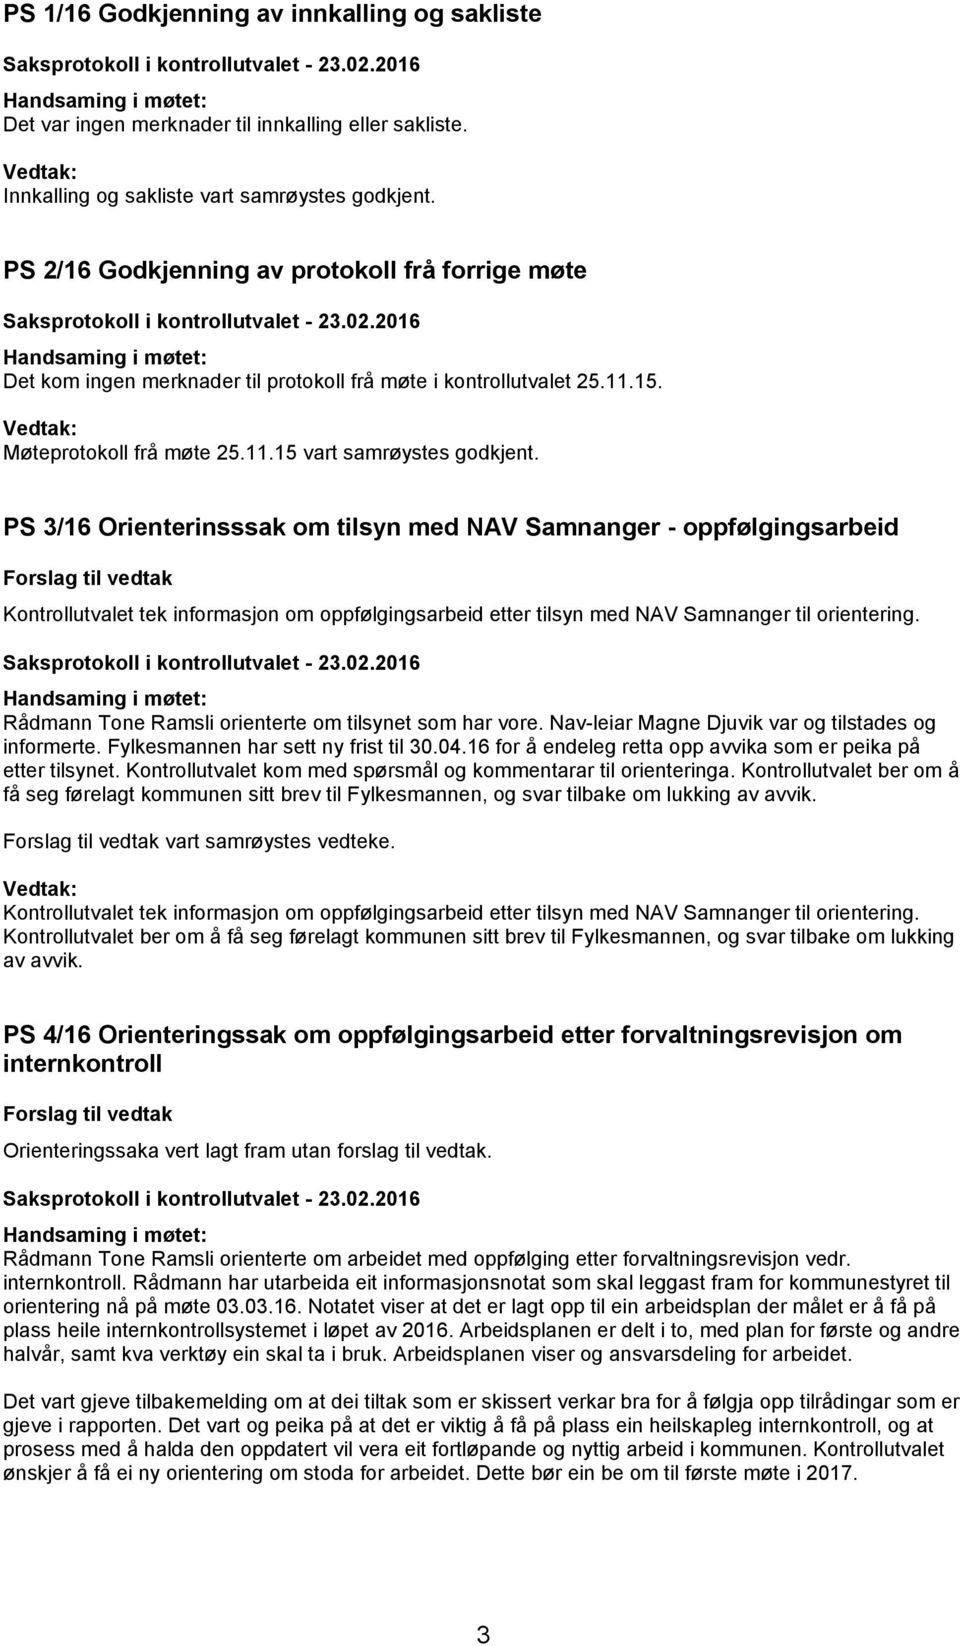 PS 3/16 Orienterinsssak om tilsyn med NAV Samnanger - oppfølgingsarbeid Kontrollutvalet tek informasjon om oppfølgingsarbeid etter tilsyn med NAV Samnanger til orientering.